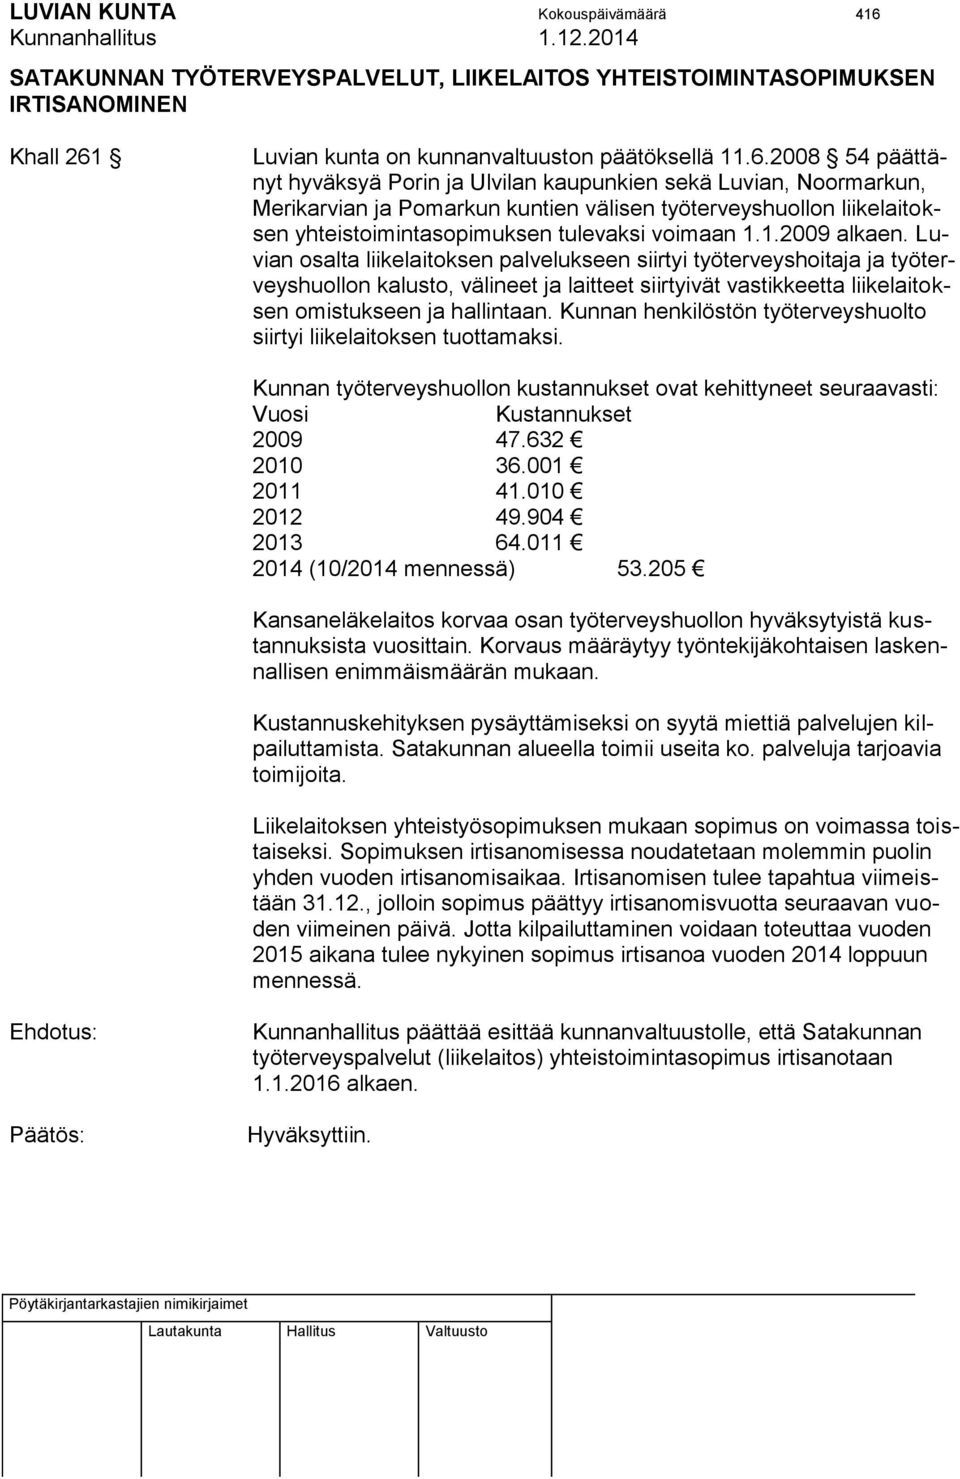 Luvian kunta on kunnanvaltuuston päätöksellä 11.6.